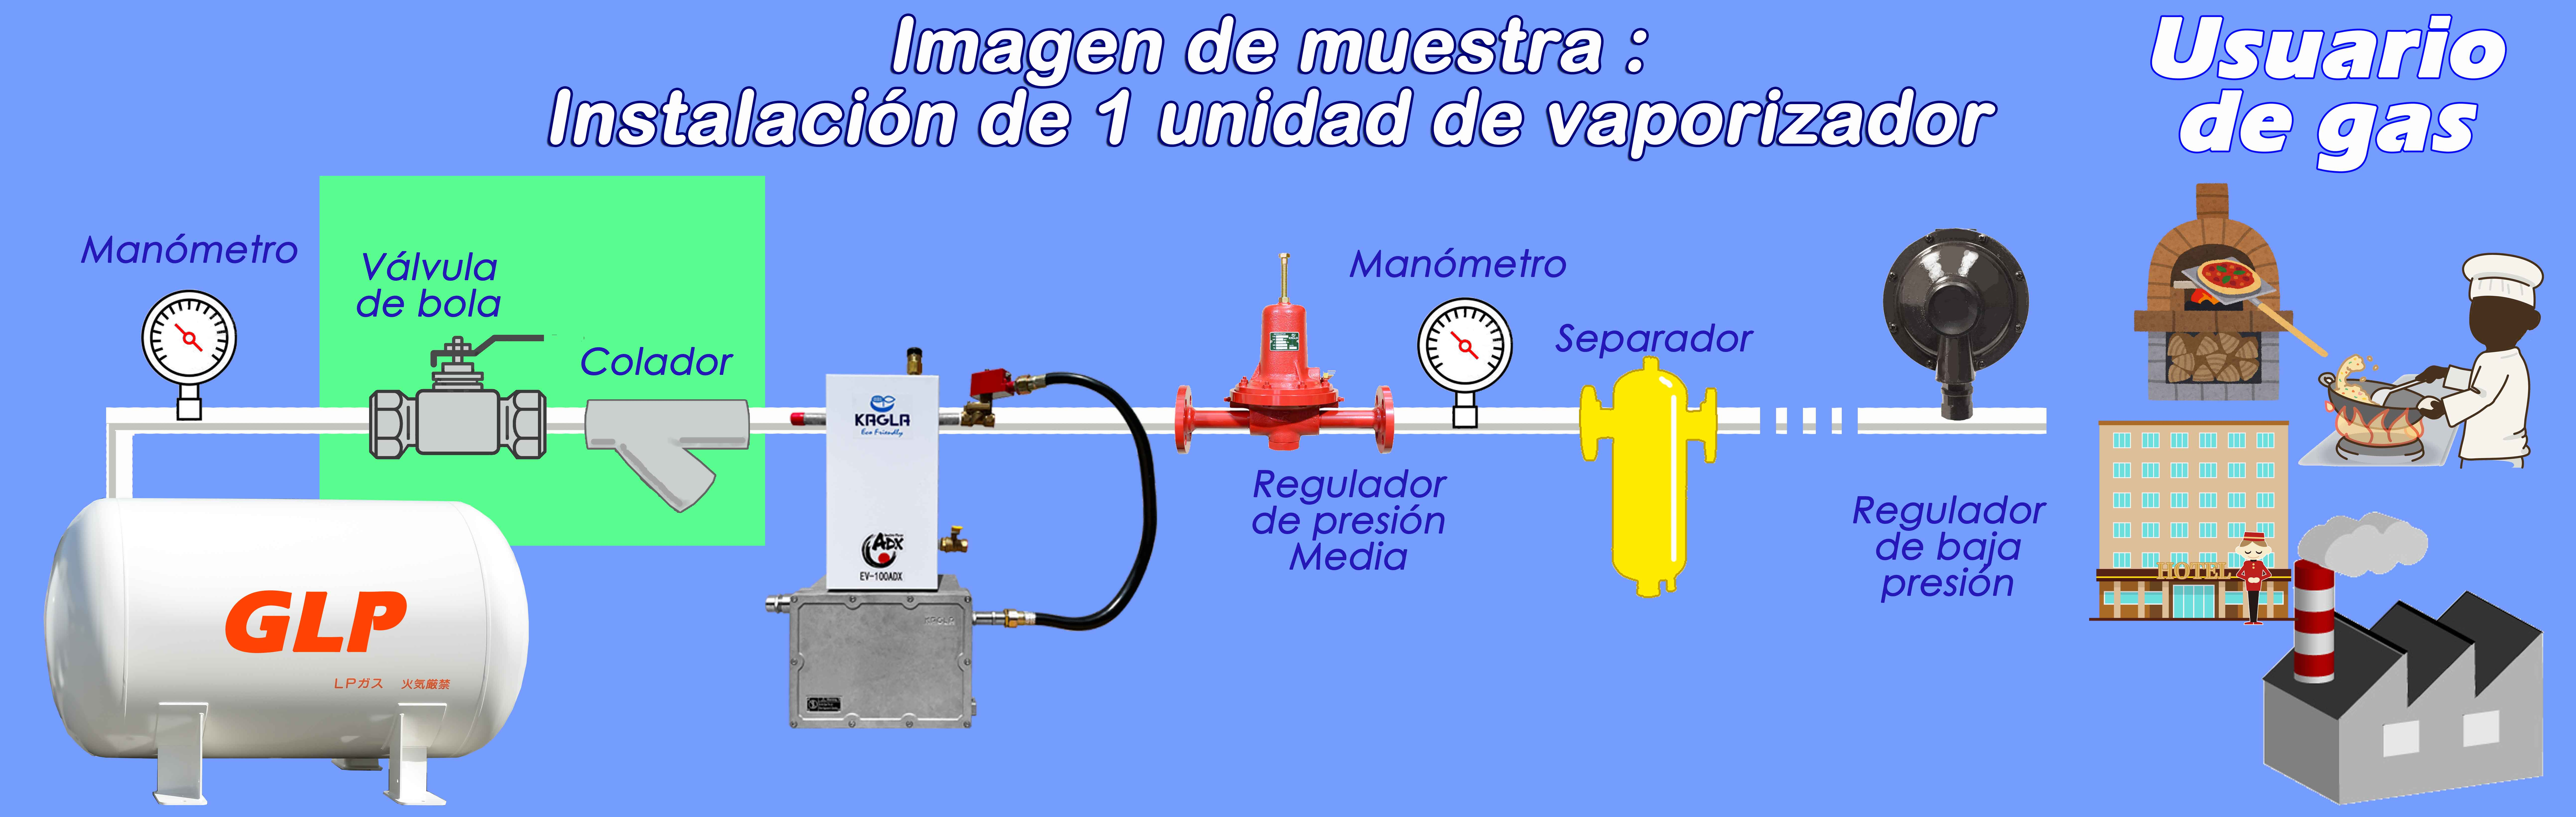 Ejemplo de imagen de instalación del vaporizador 100ADX y dispositivos LPG relacionados